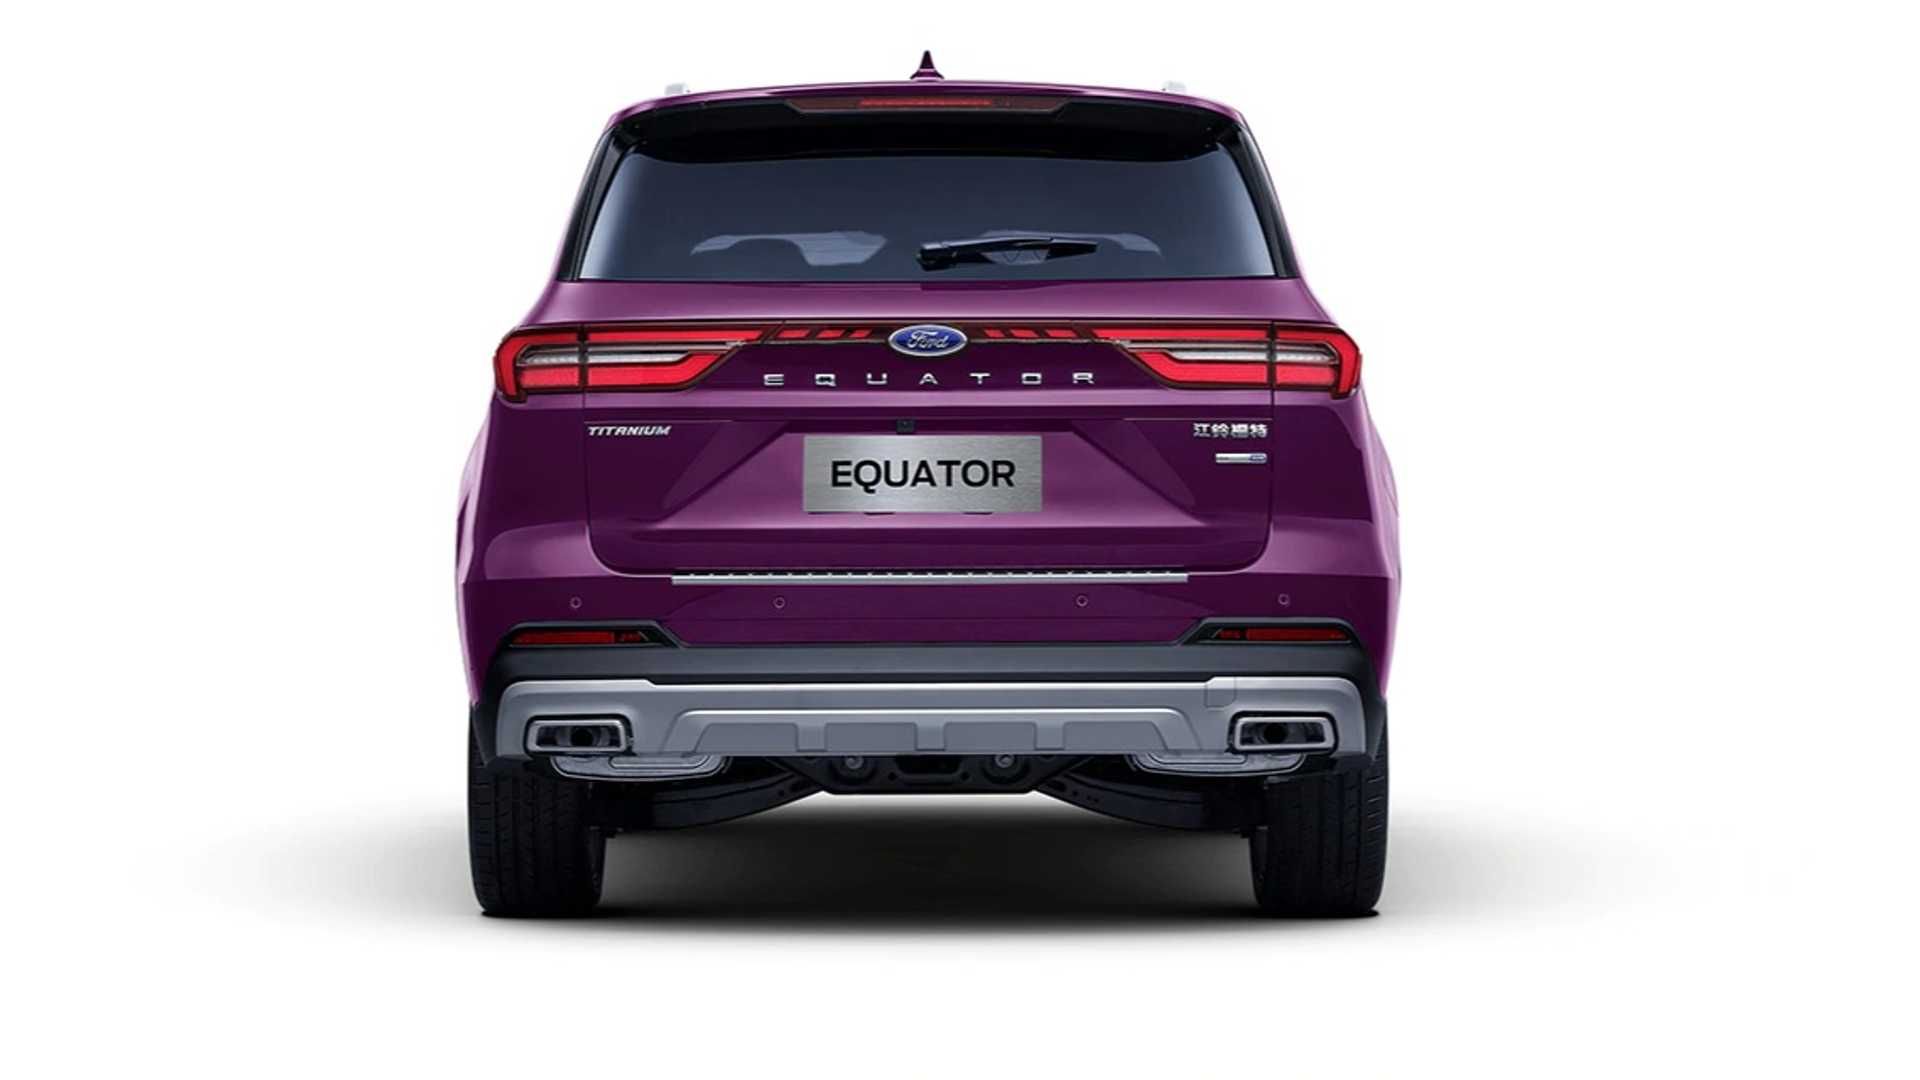 مرجع متخصصين ايران نماي عقب شاسي بلند فورد اكويتور / Ford Equator SUV رنگ بنفش